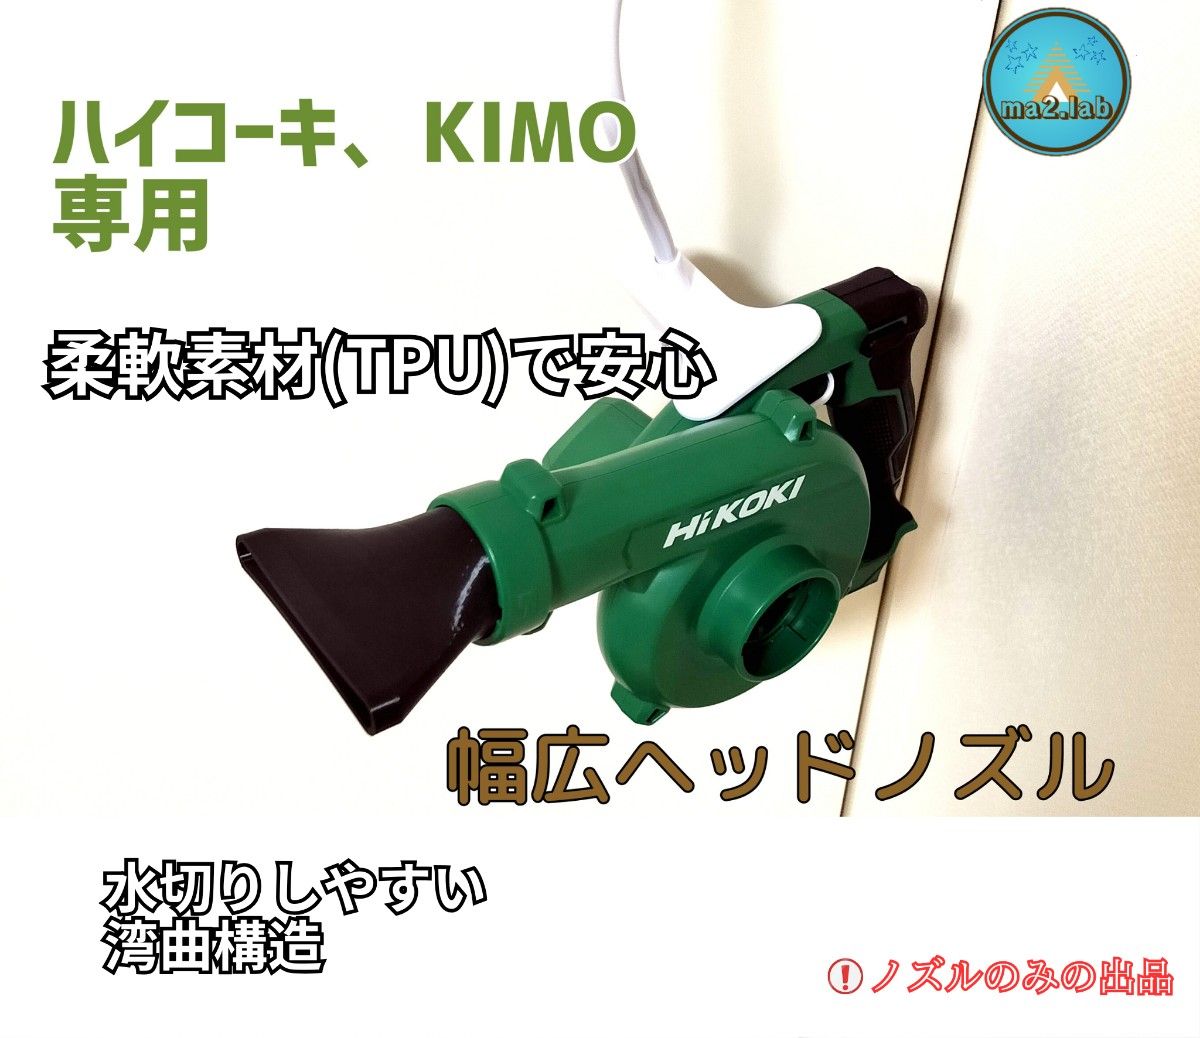 KIMO ハイコーキ充電式ブロワー幅広ヘッドノズル 洗車] キズ防止 旧マキタ